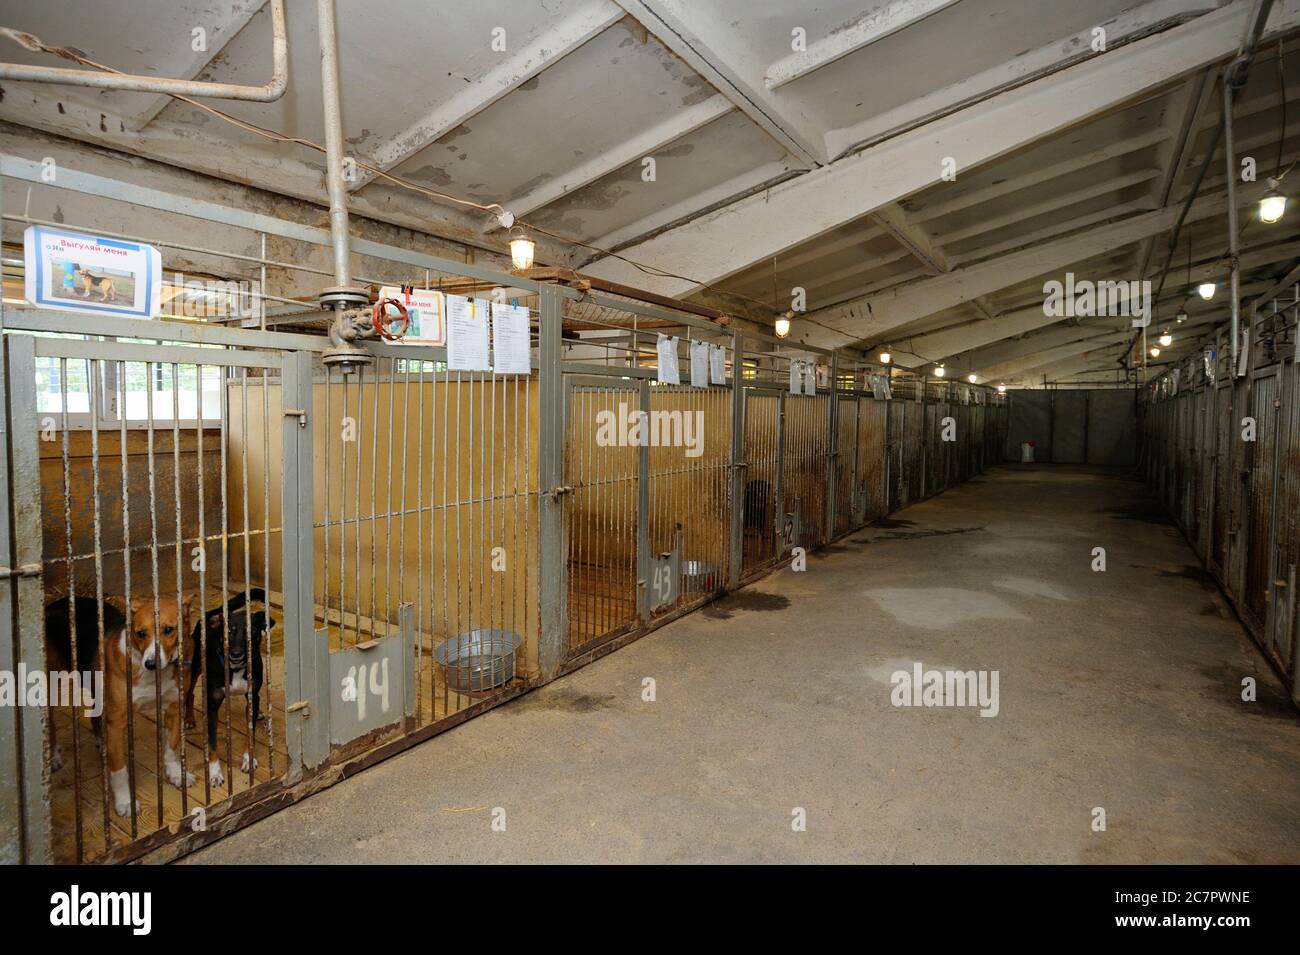 Kommunales Tierheim: hangar mit Reihe von Volieren im Innenbereich, streunende Hunde, die hinter Gittern bellten Stockfoto